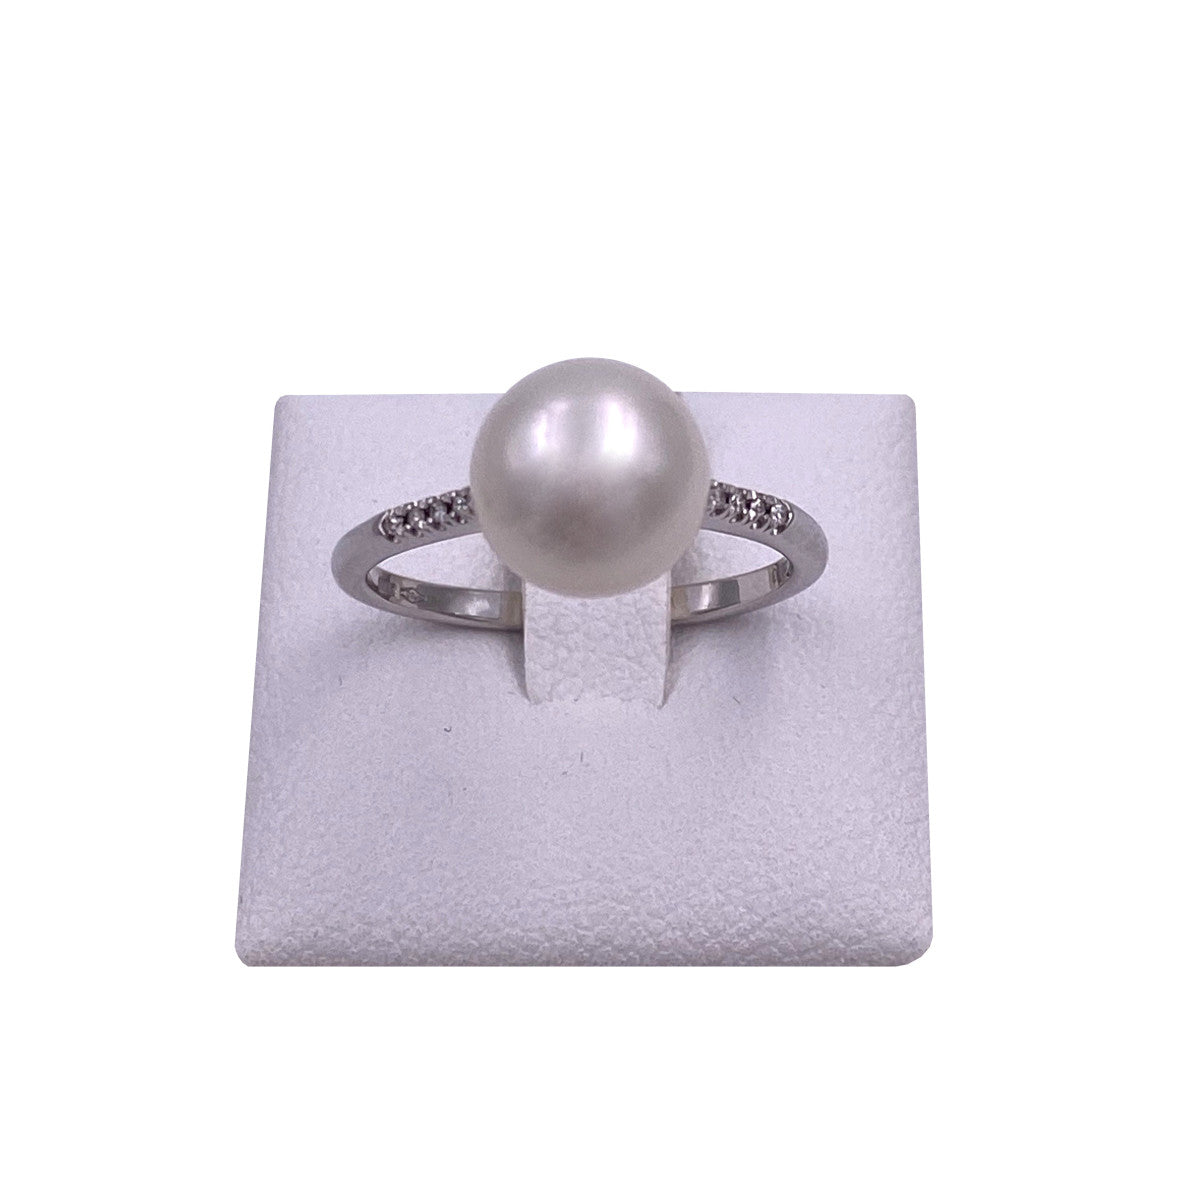 anello con perla naturale e diamanti montatura oro bianco 18 carati. anello di mirco visconti con perla centrale e diamanti a lato di colore bianco. perla 9 mm diametro coltivata in acqua dolce.